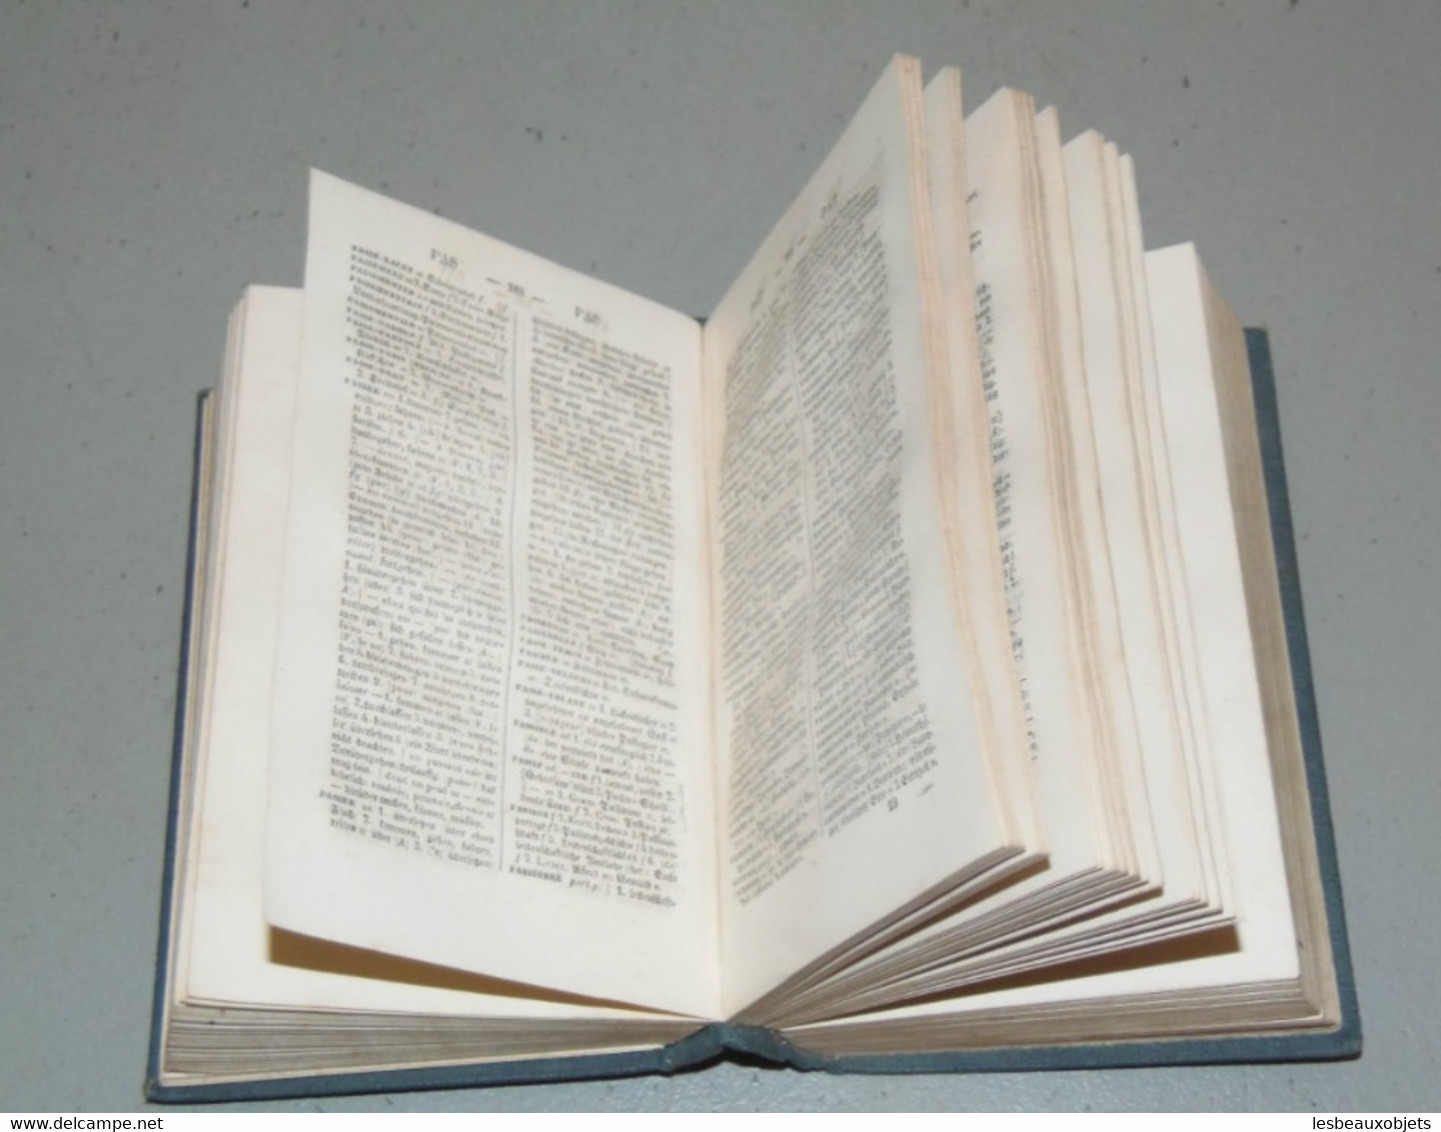 ANCIEN PETIT DICTIONNAIRE De POCHE ALLEMAND Français K.ROTTECK Fin XIXe Livre Ancien Collection Bibliothèque - Dictionnaires